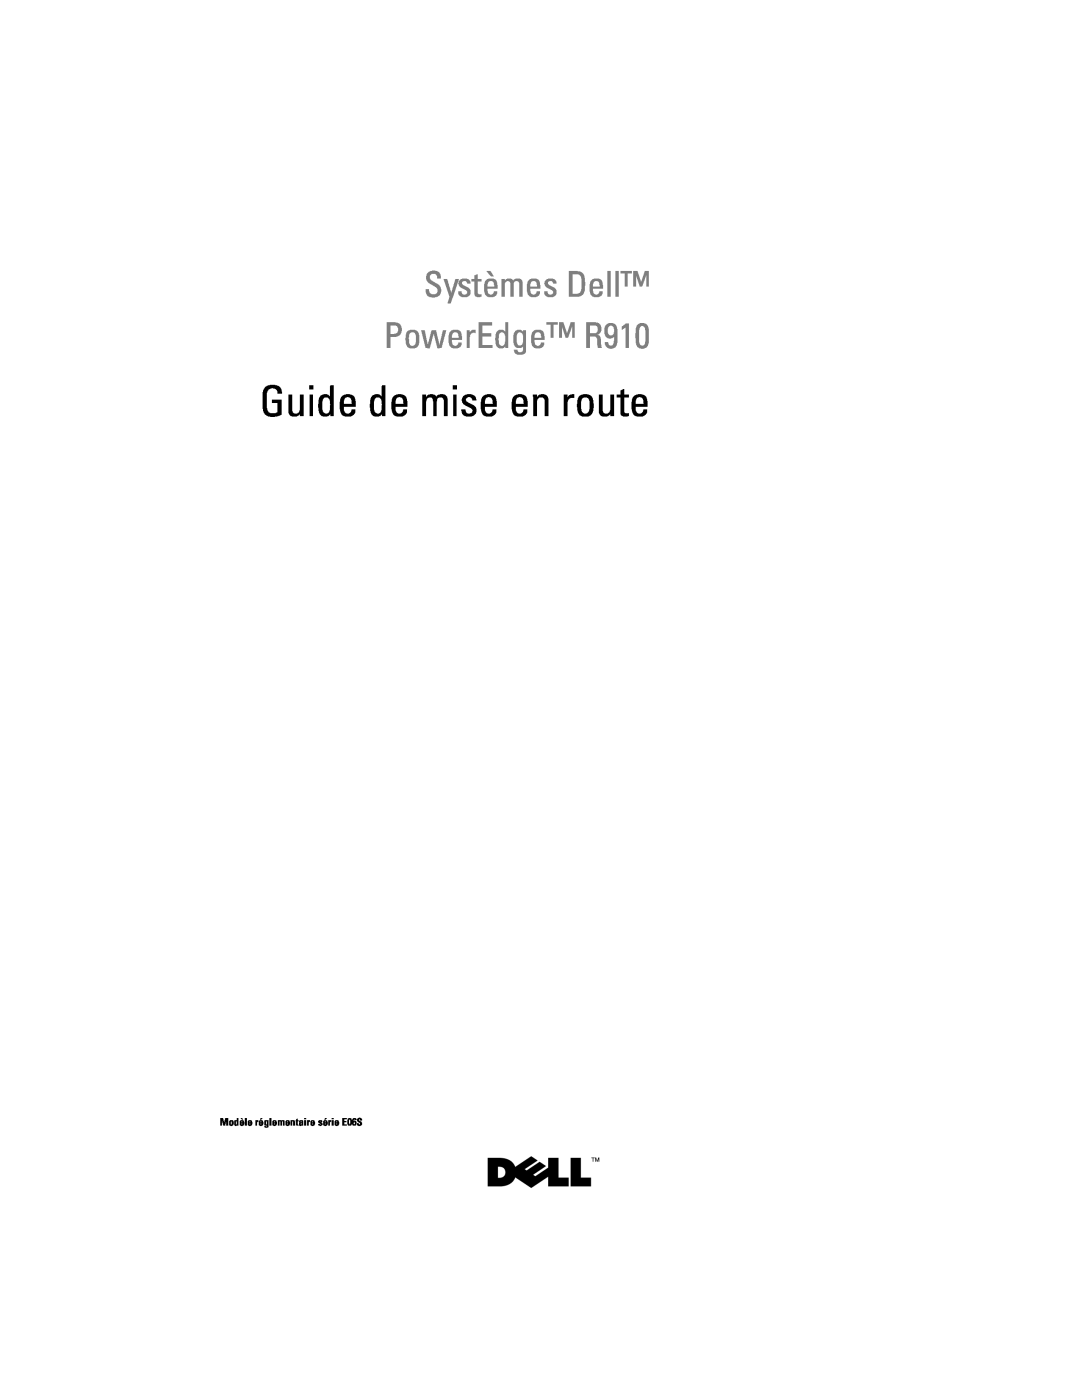 Dell manual Guide de mise en route, Systèmes Dell PowerEdge R910, Modèle réglementaire série E06S 